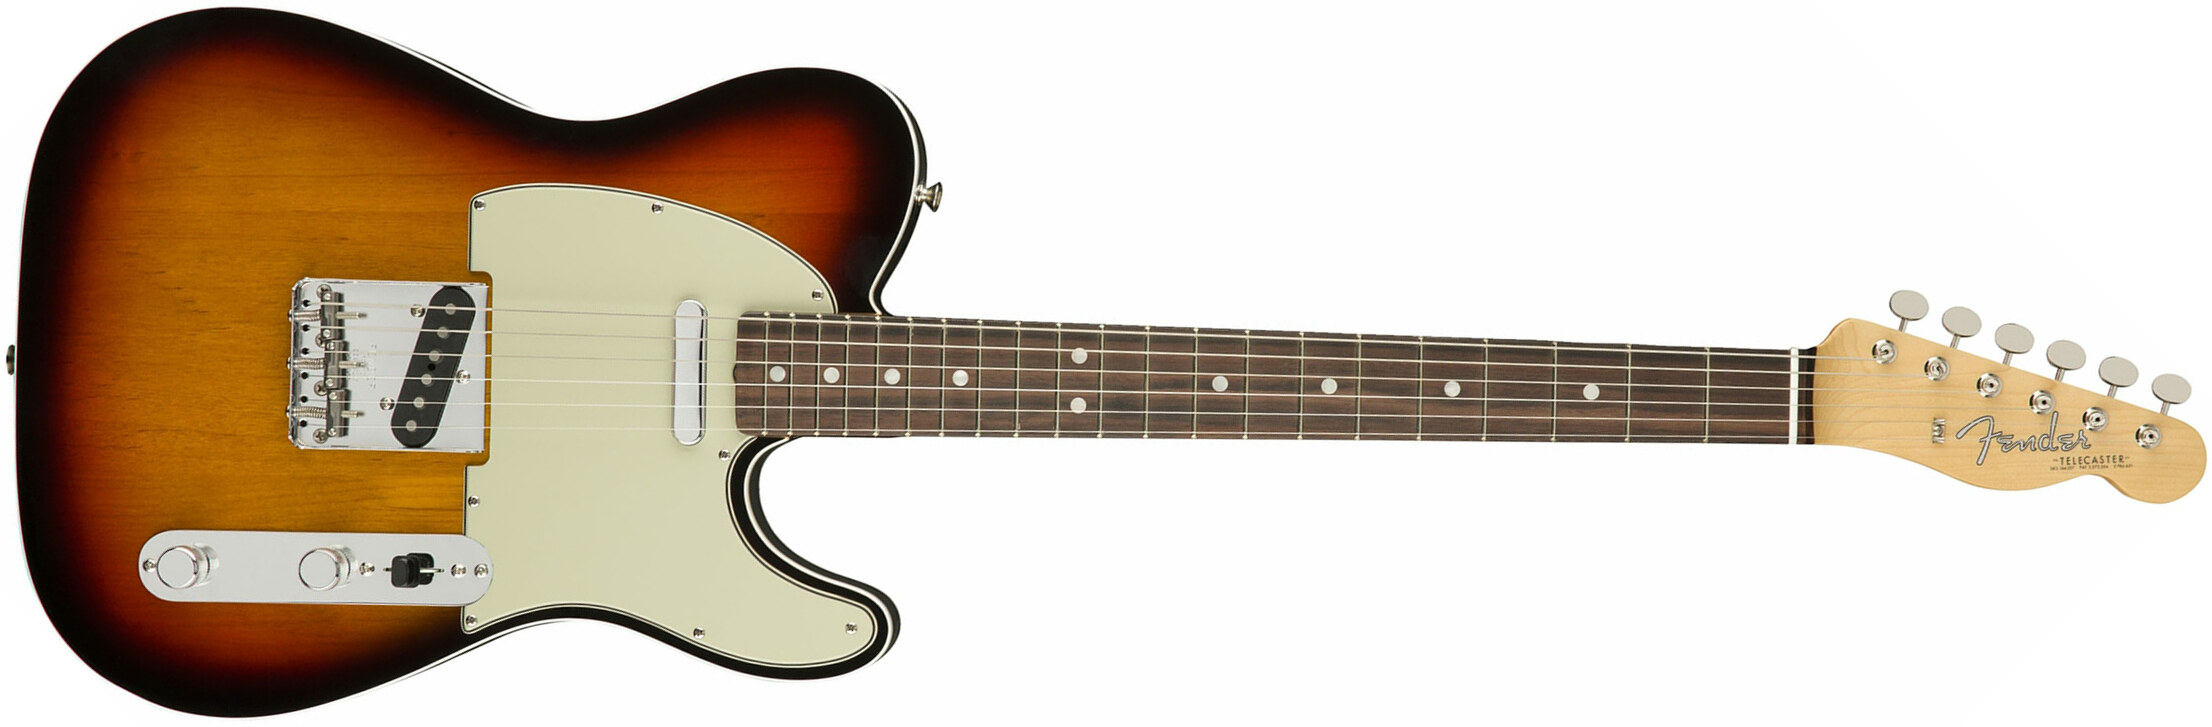 Fender Tele '60s American Original Usa Ss Rw - 3-color Sunburst - E-Gitarre in Teleform - Main picture